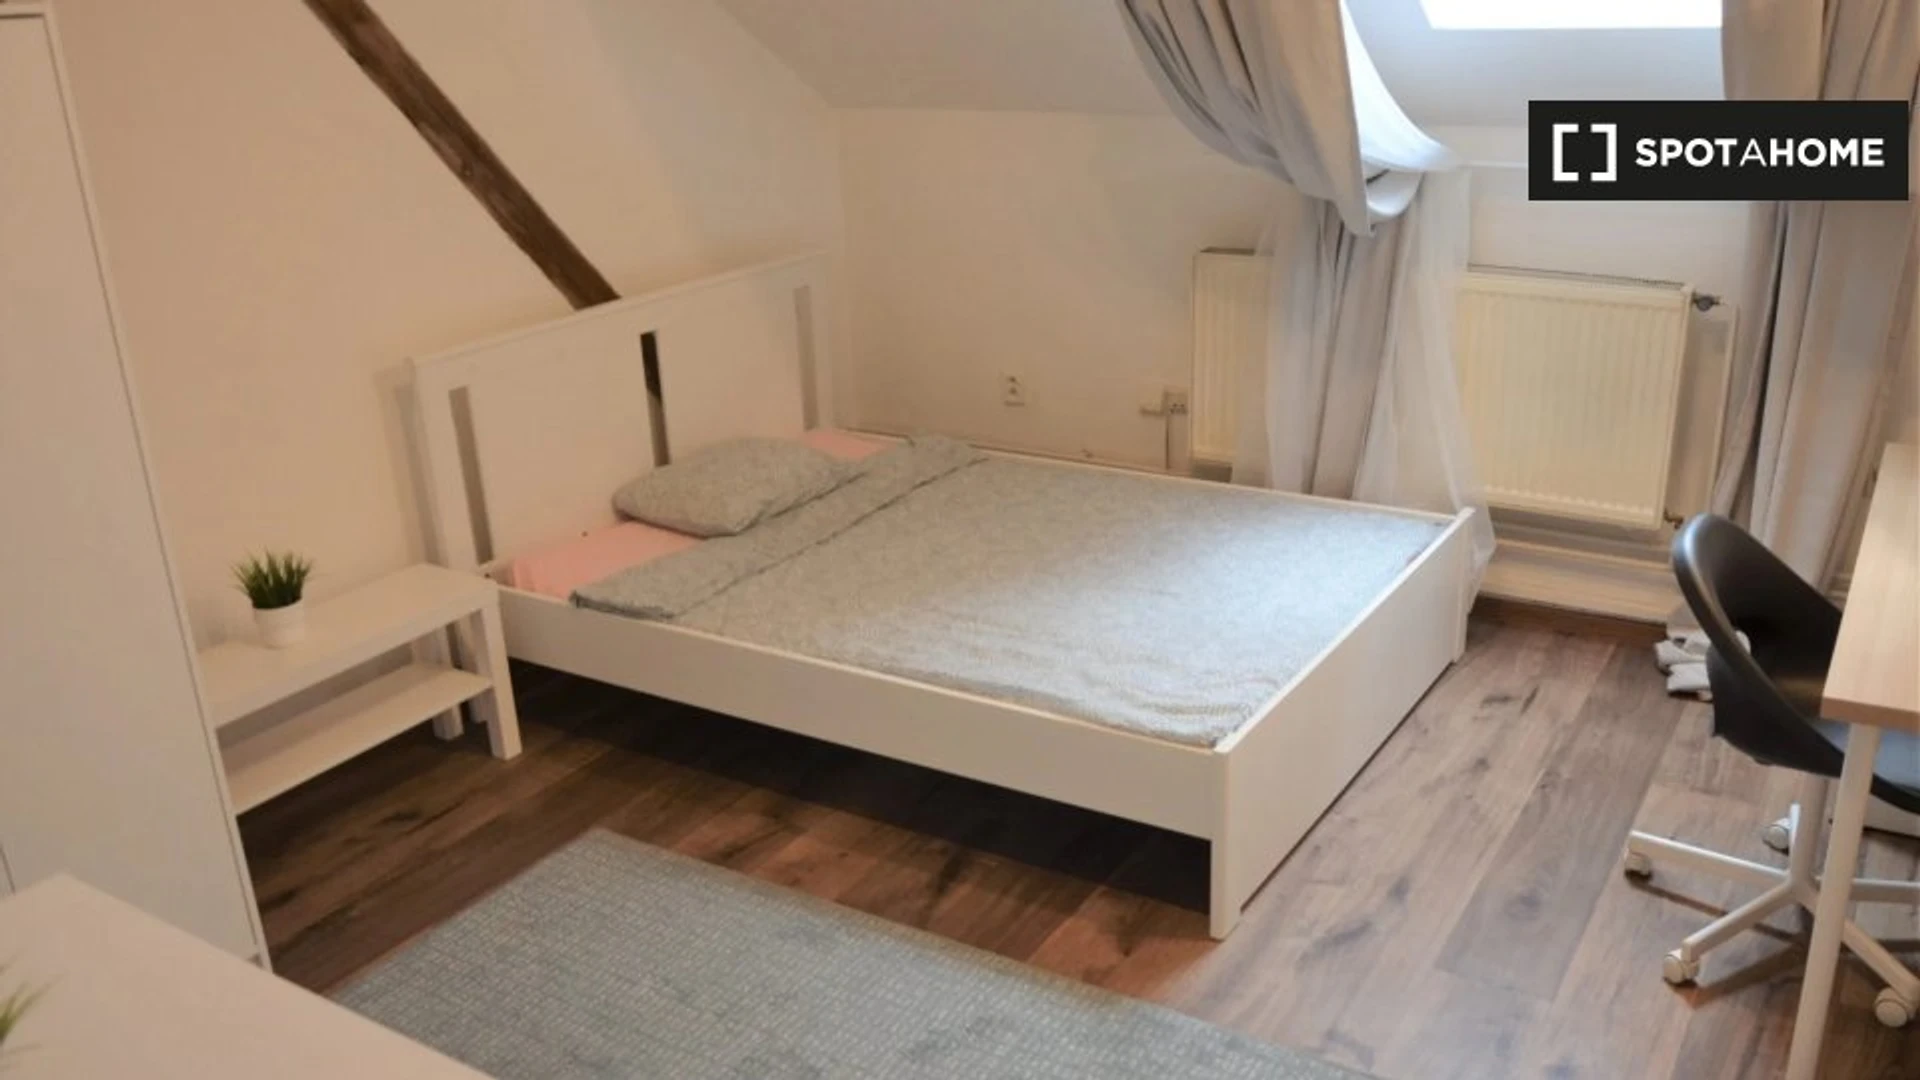 Quarto para alugar com cama de casal em Praga